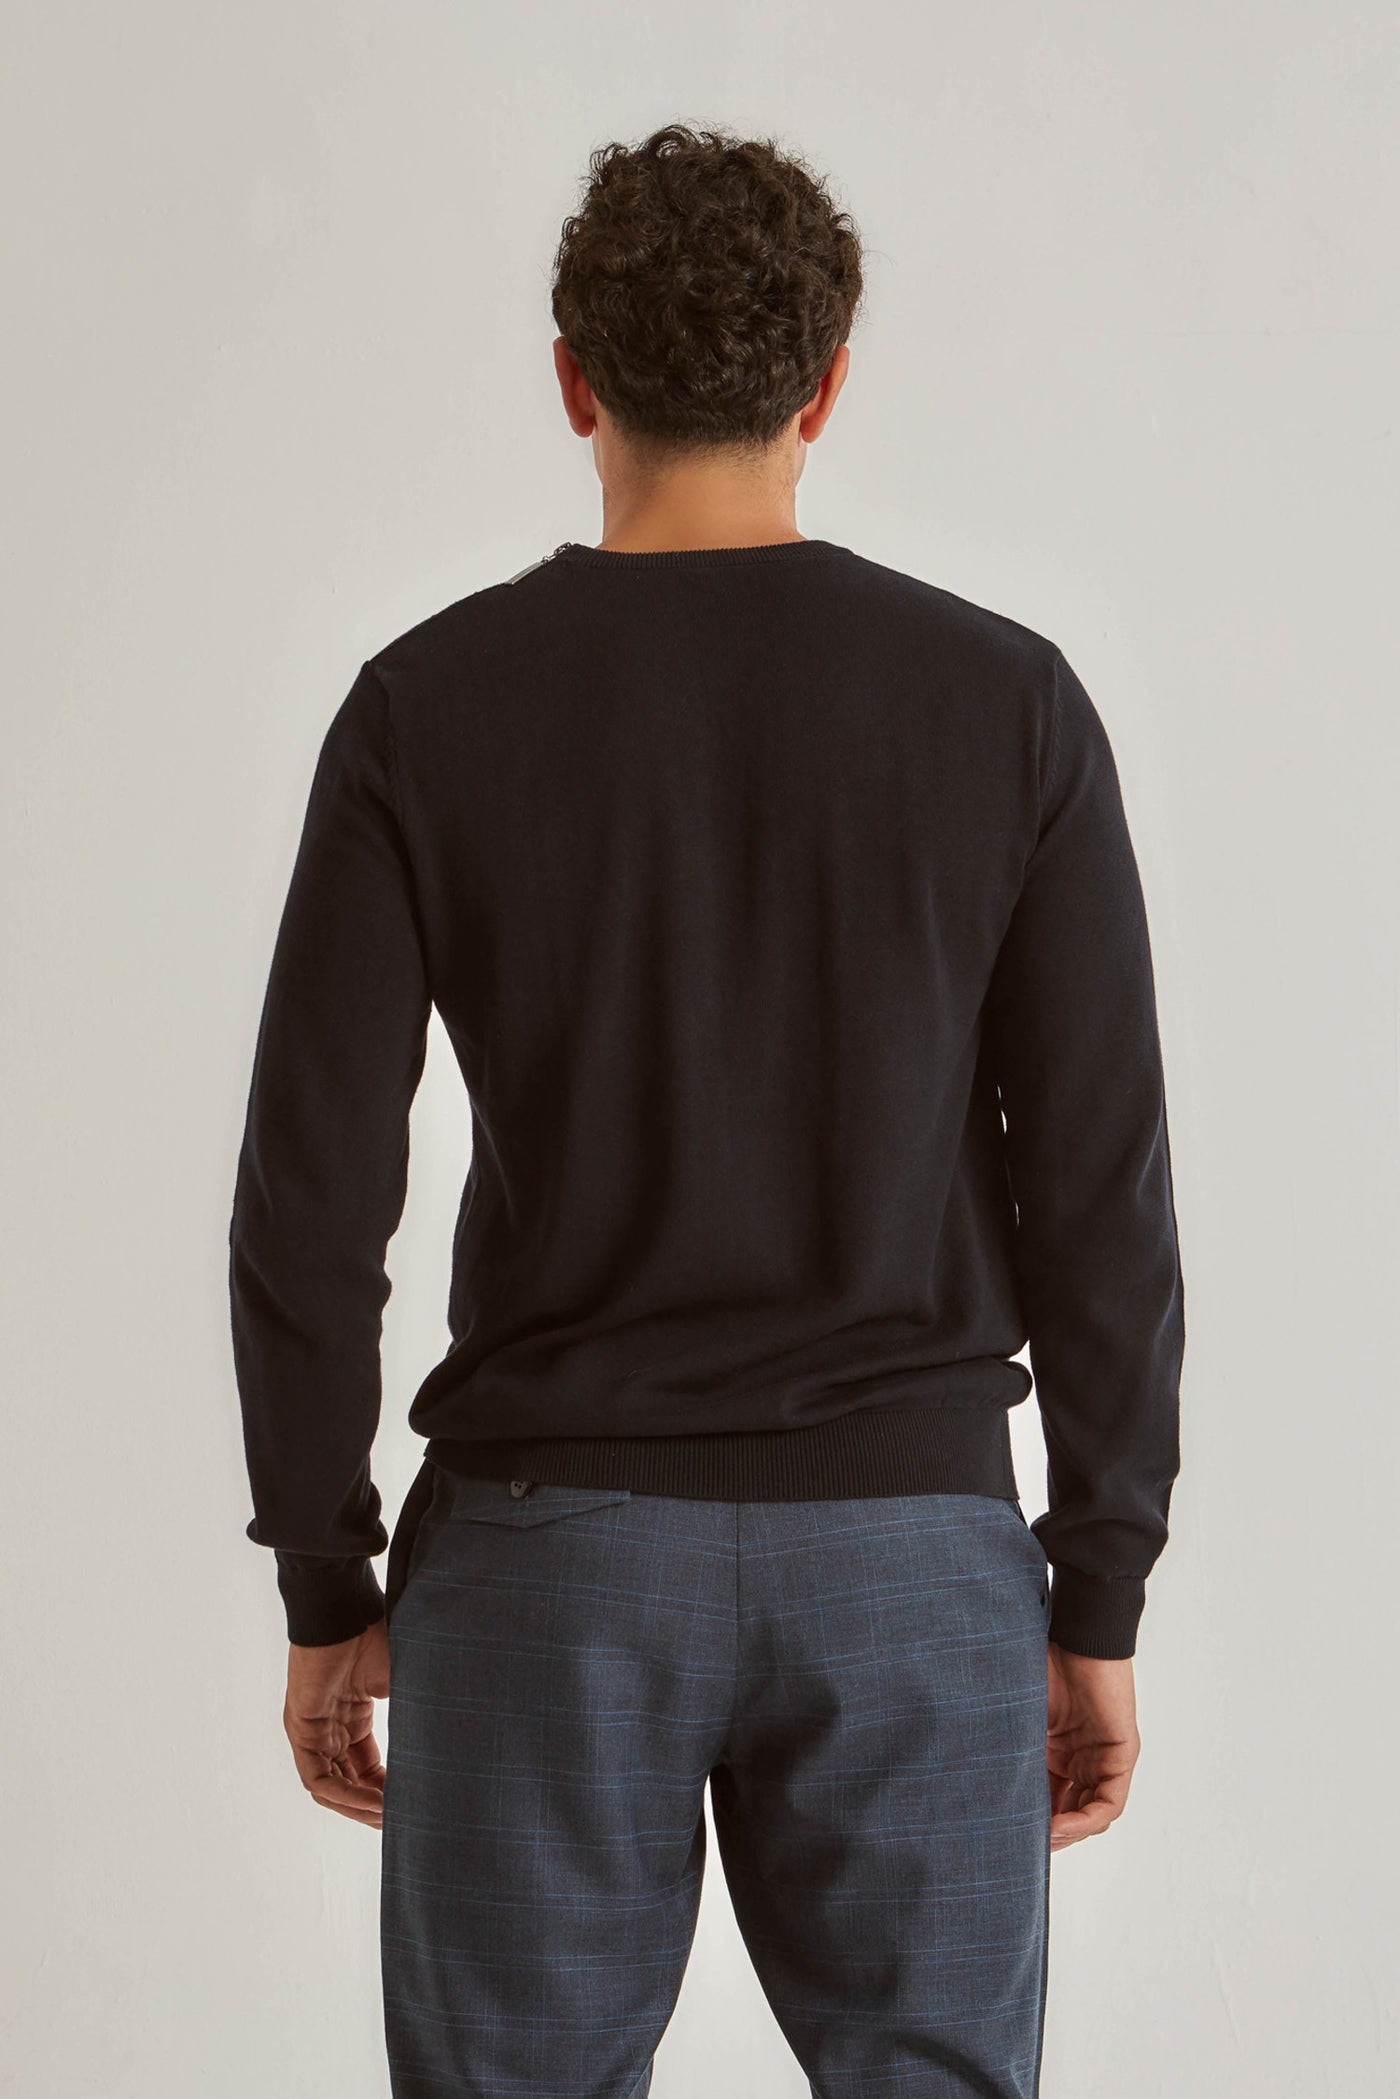 Sweater - Basic - Crew Neck